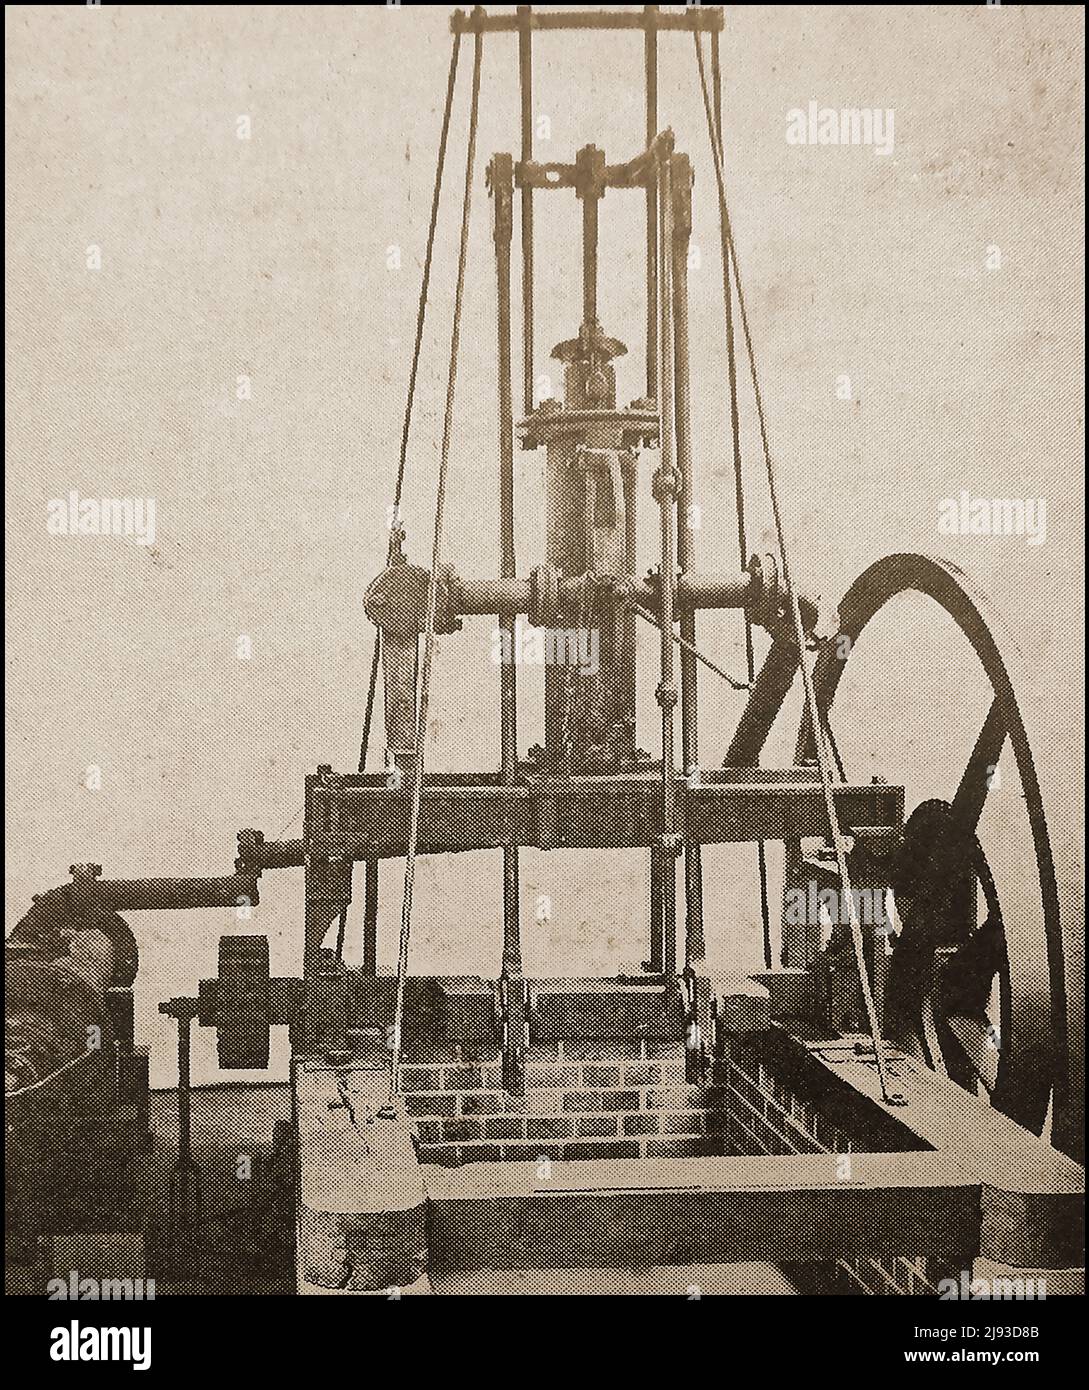 Une photographie du premier musée du moteur de pompage de Richard Trevithick utilisé dans les mines Banque D'Images